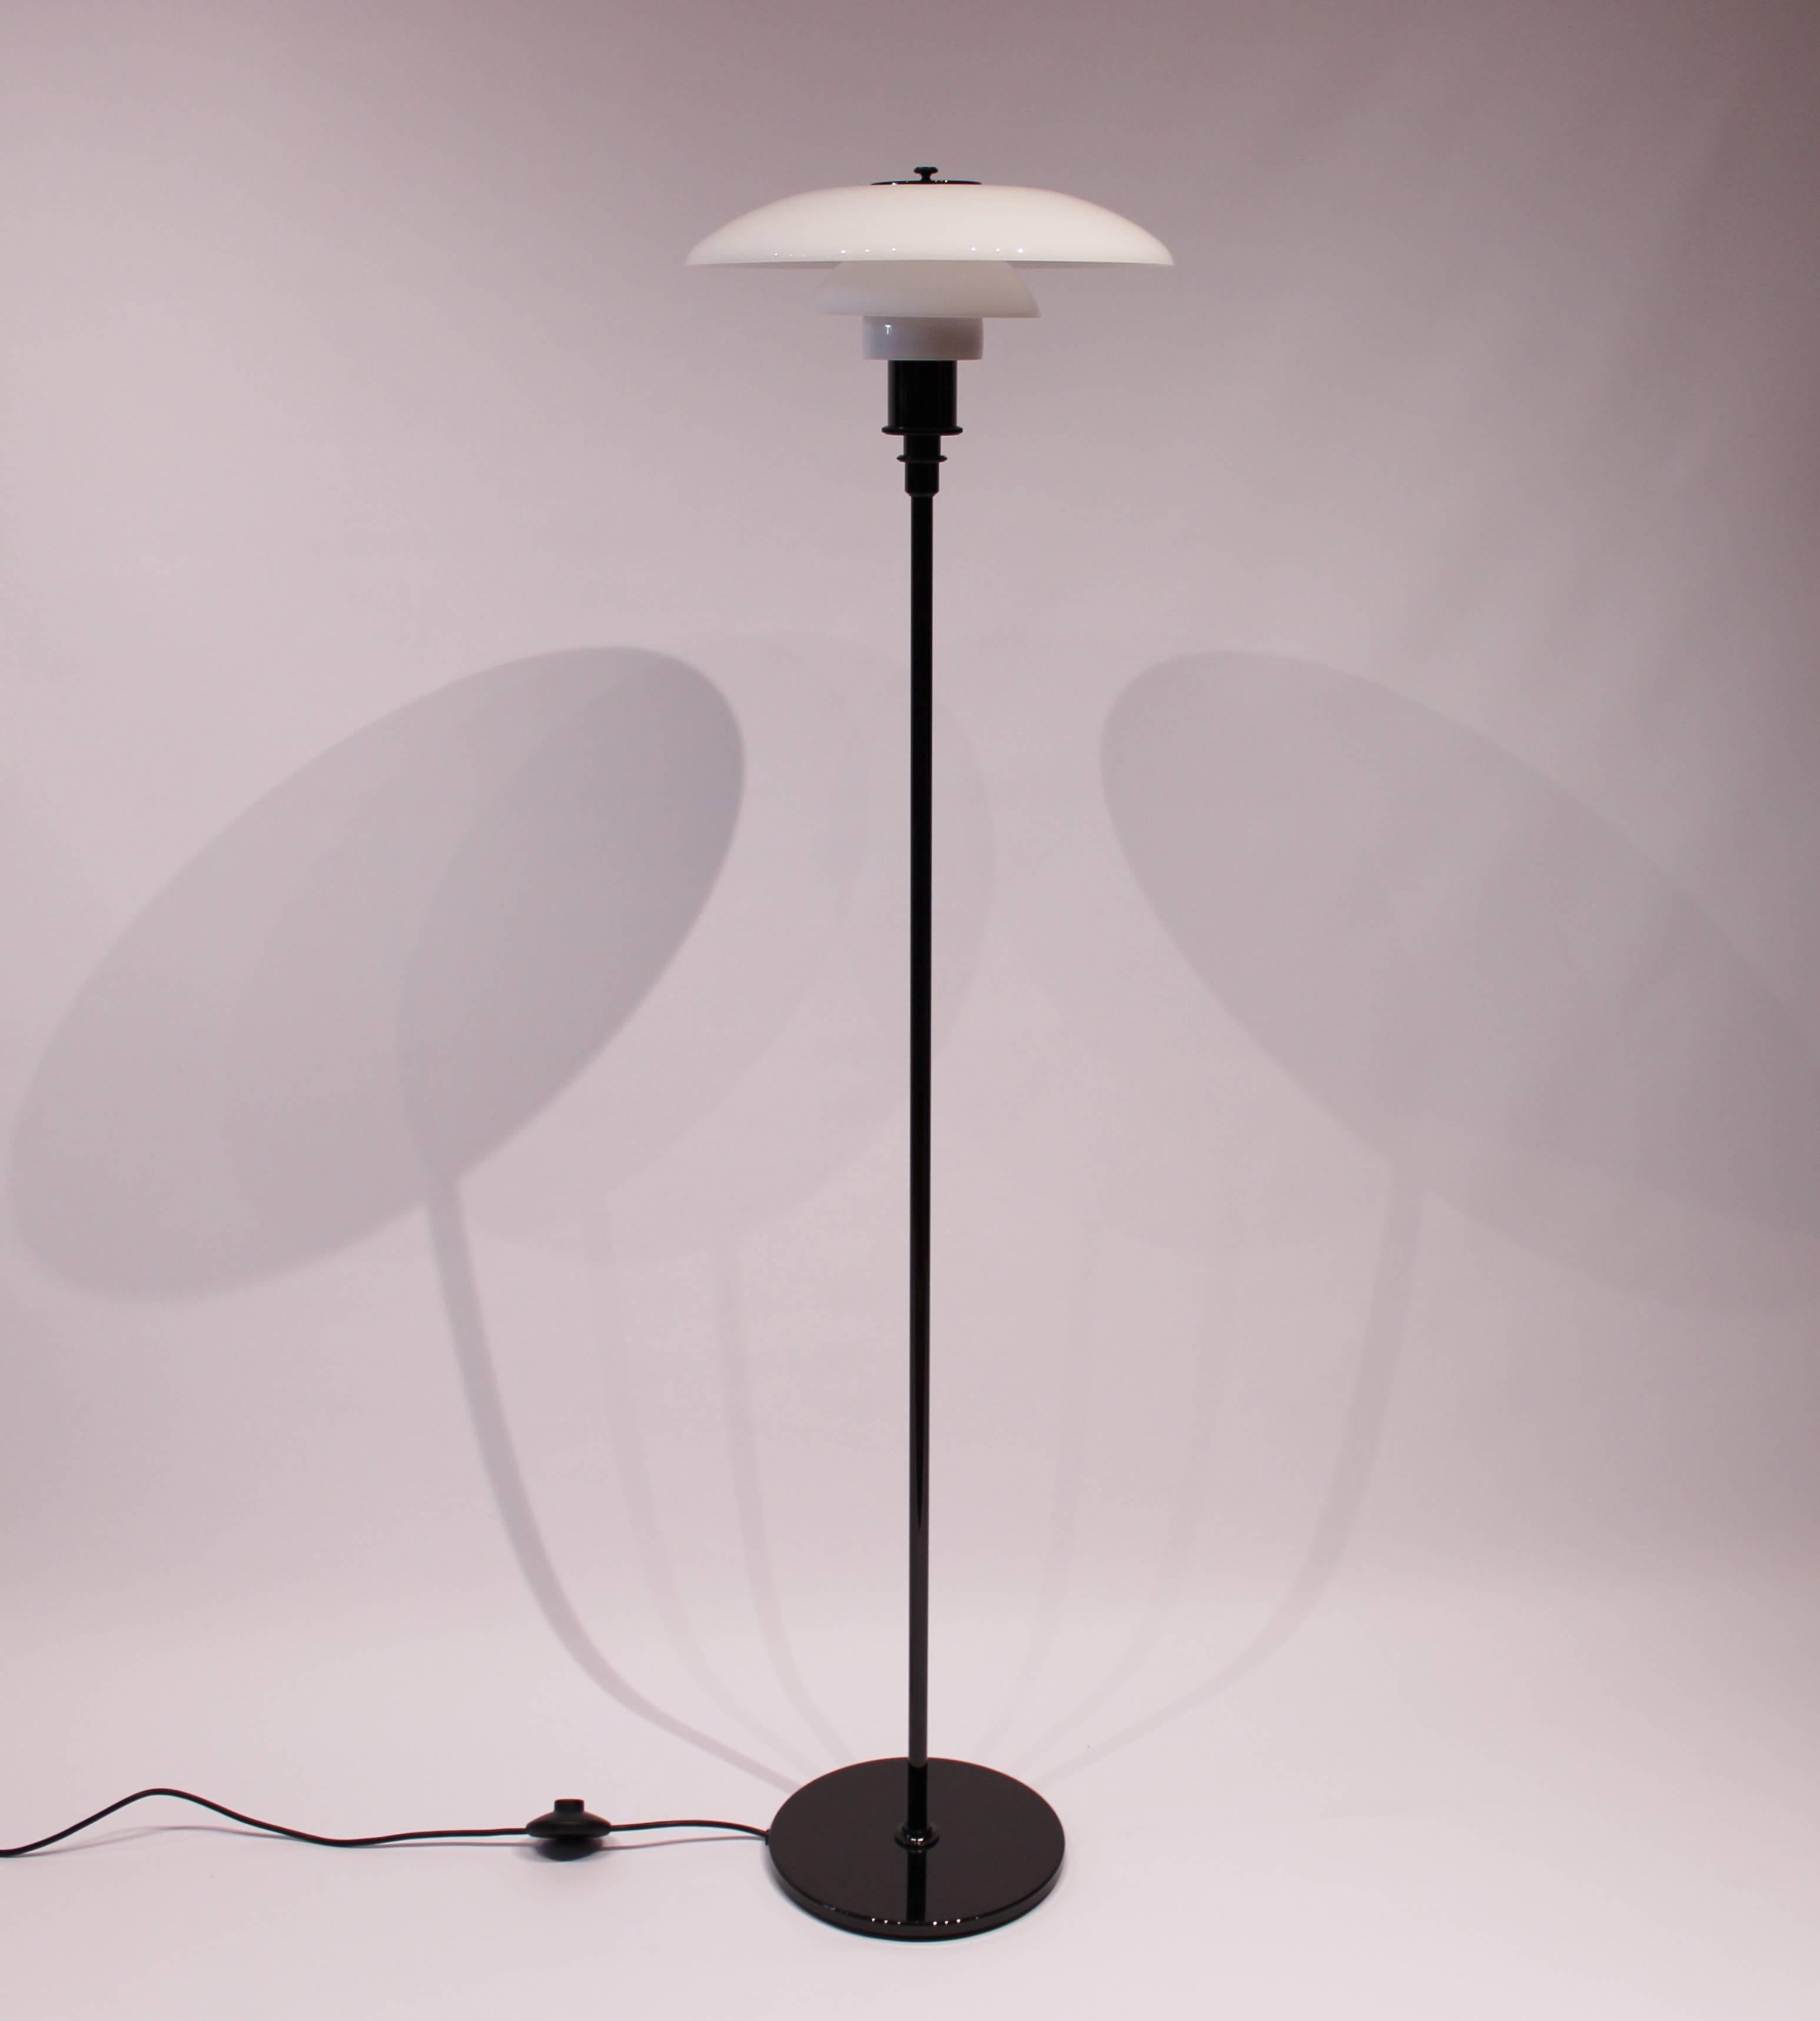 Le lampadaire PH 3½-2½, conçu par Poul Henningsen et fabriqué par Louis Poulsen, est un exemple emblématique du design d'éclairage Scandinavian Modern. Avec son cadre fabriqué en acier métallique noir et ses accents en laiton, cette lampe incarne